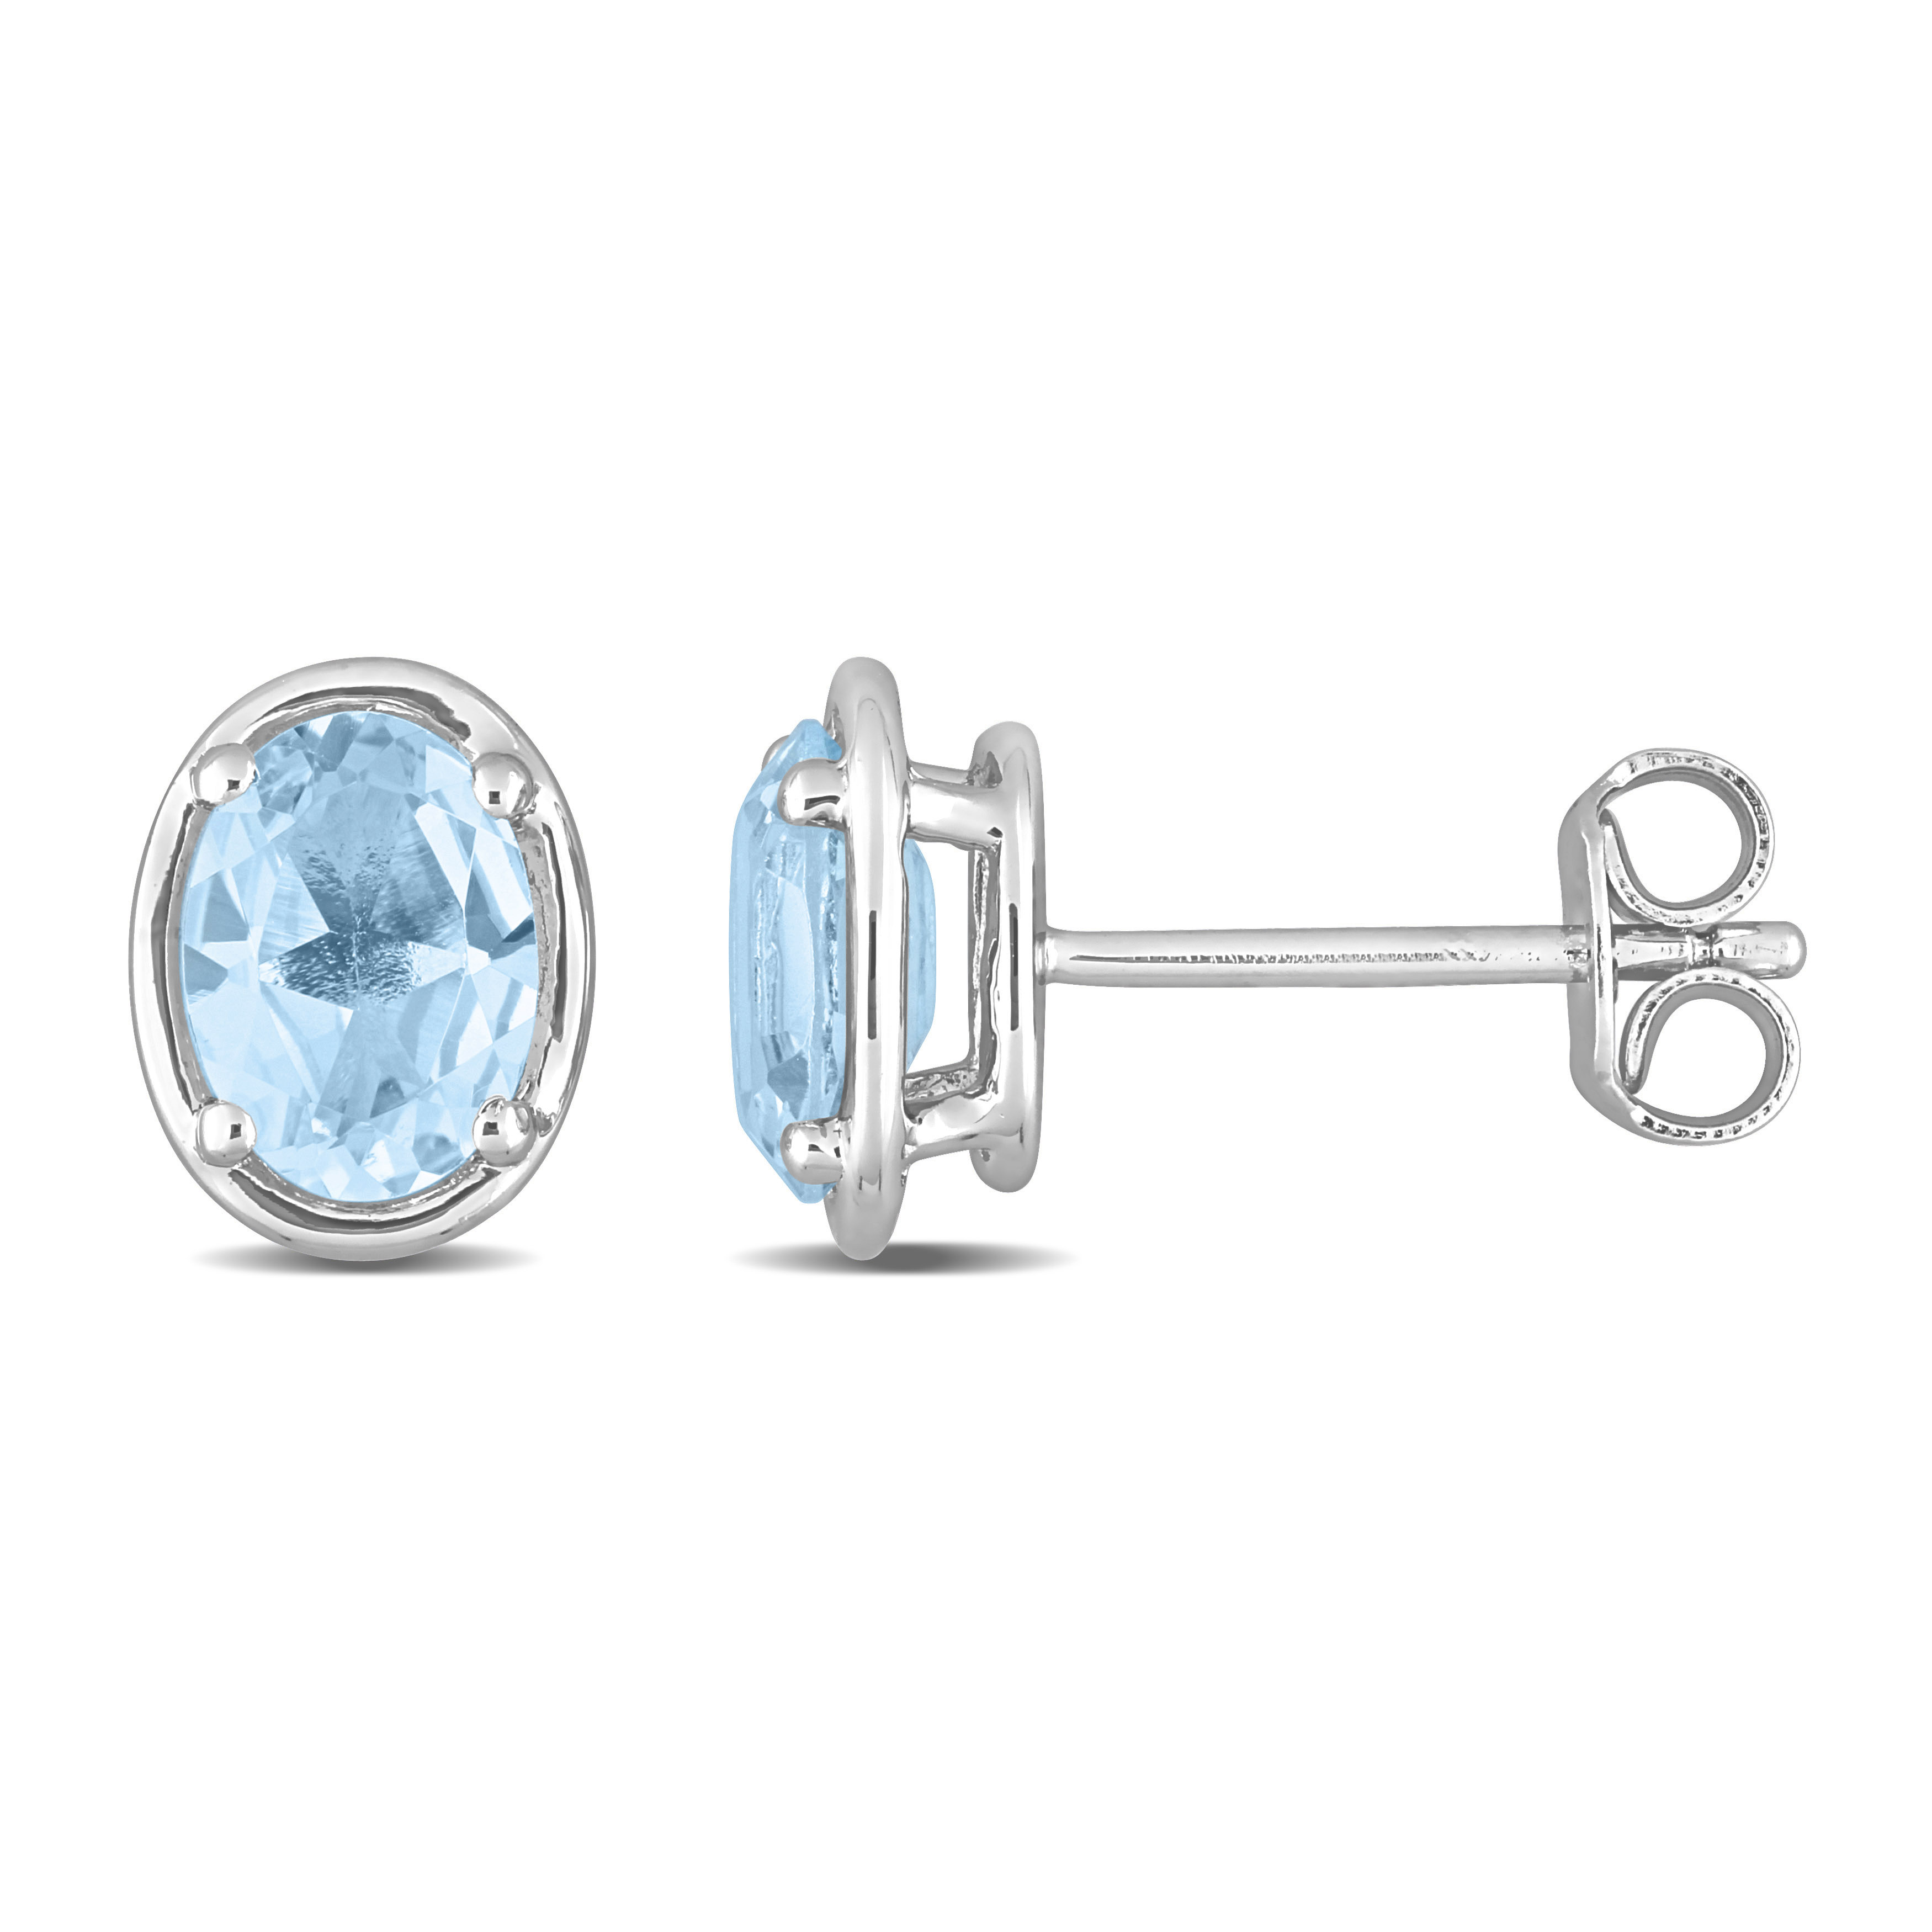 1 7/8 CT TGW Blue Topaz Bezel Style Oval Stud Earrings in Sterling Silver